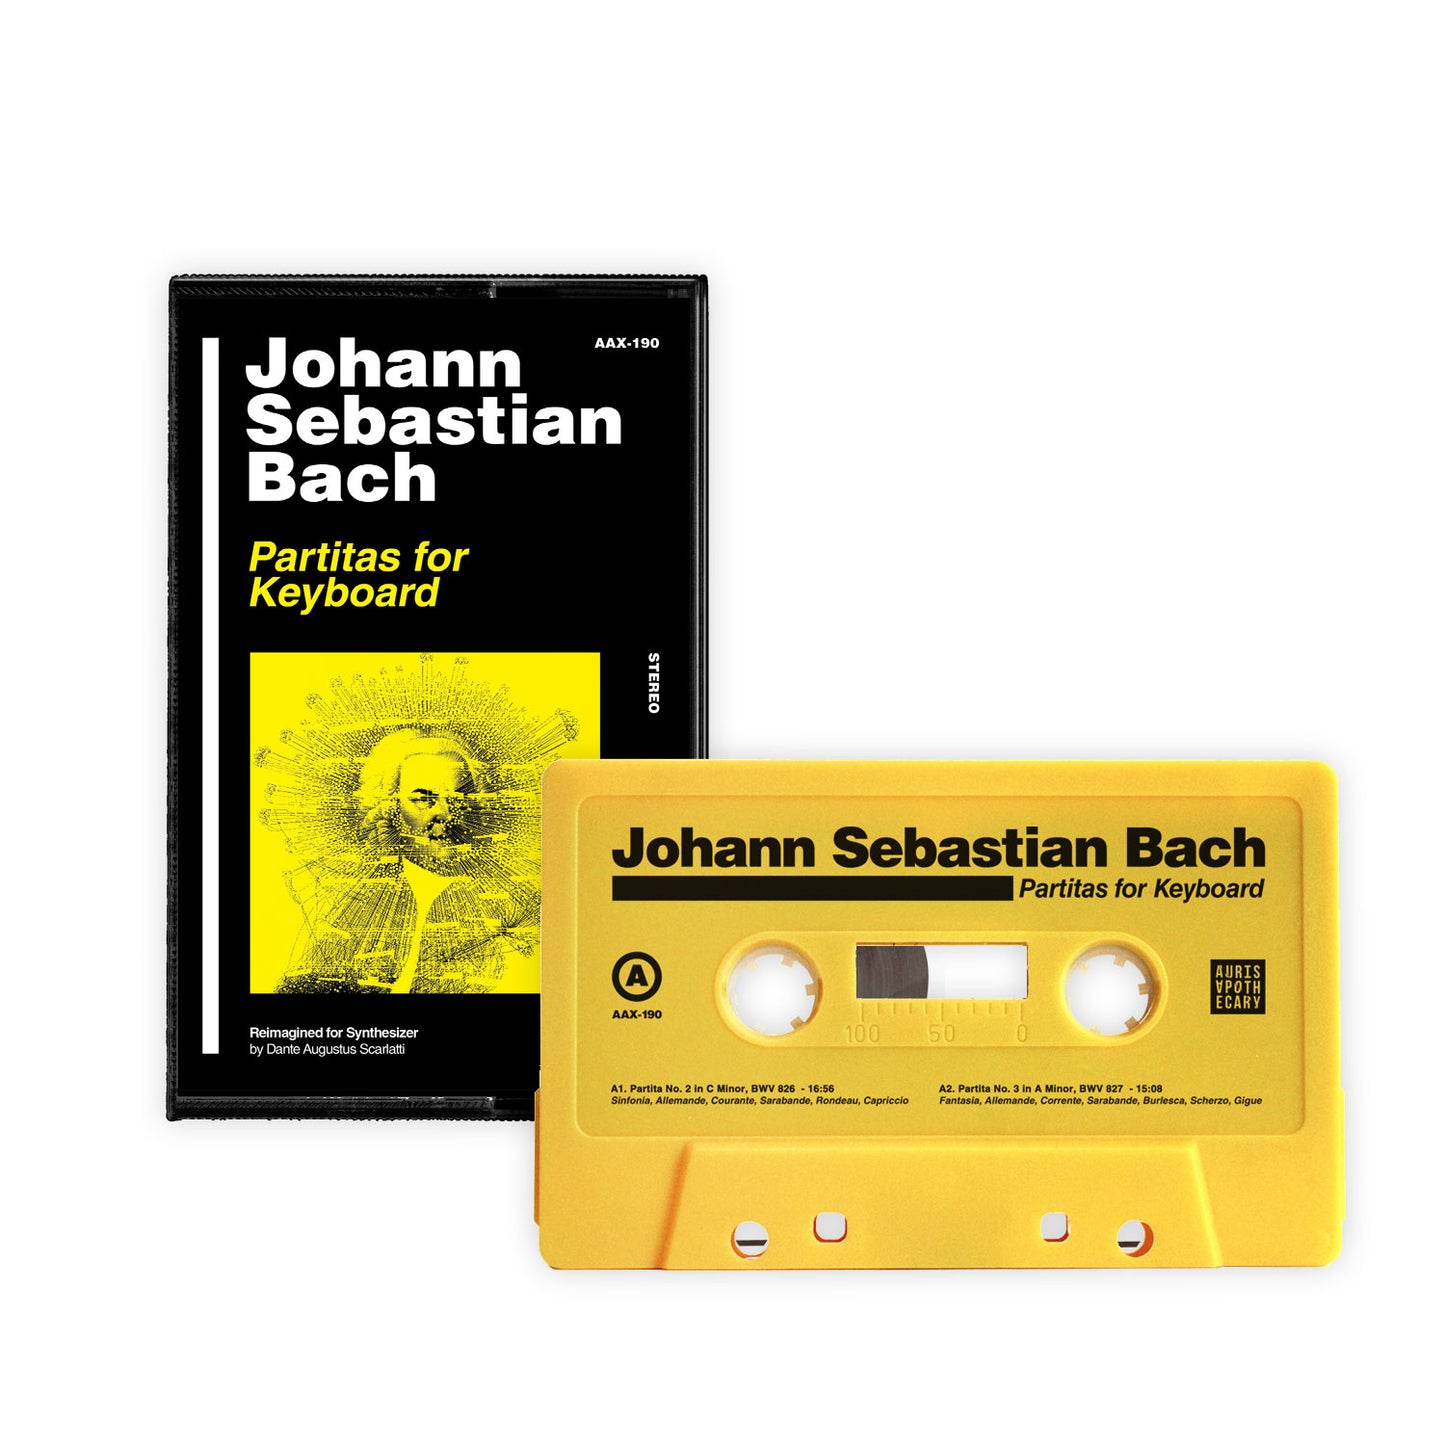 [SOLD OUT] JOHANN SEBASTIAN BACH "Partitas for Keyboard" Cassette Tape